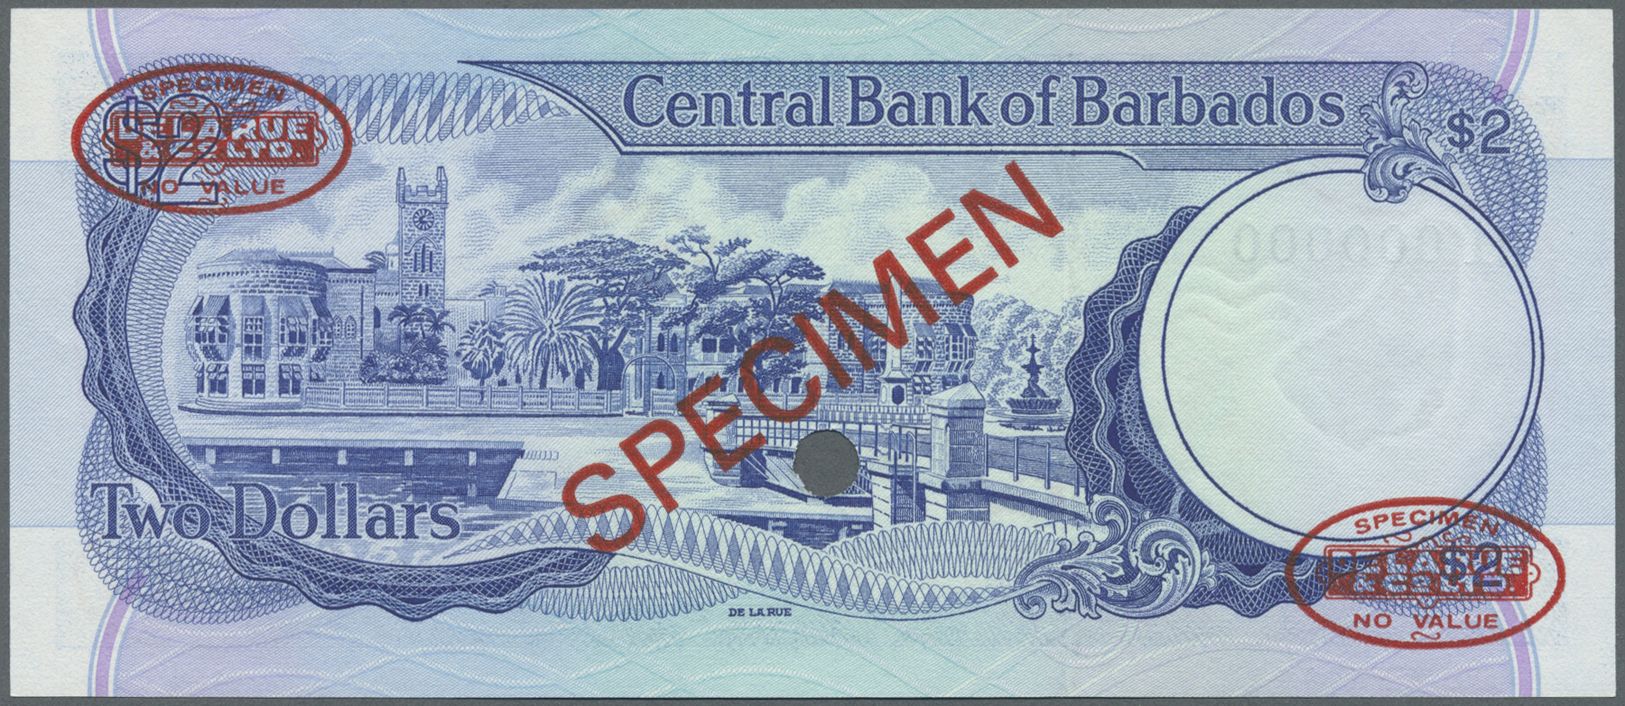 00241 Barbados: 2 Dollars 1980 Specimen P. 30s In Condition: UNC. - Barbados